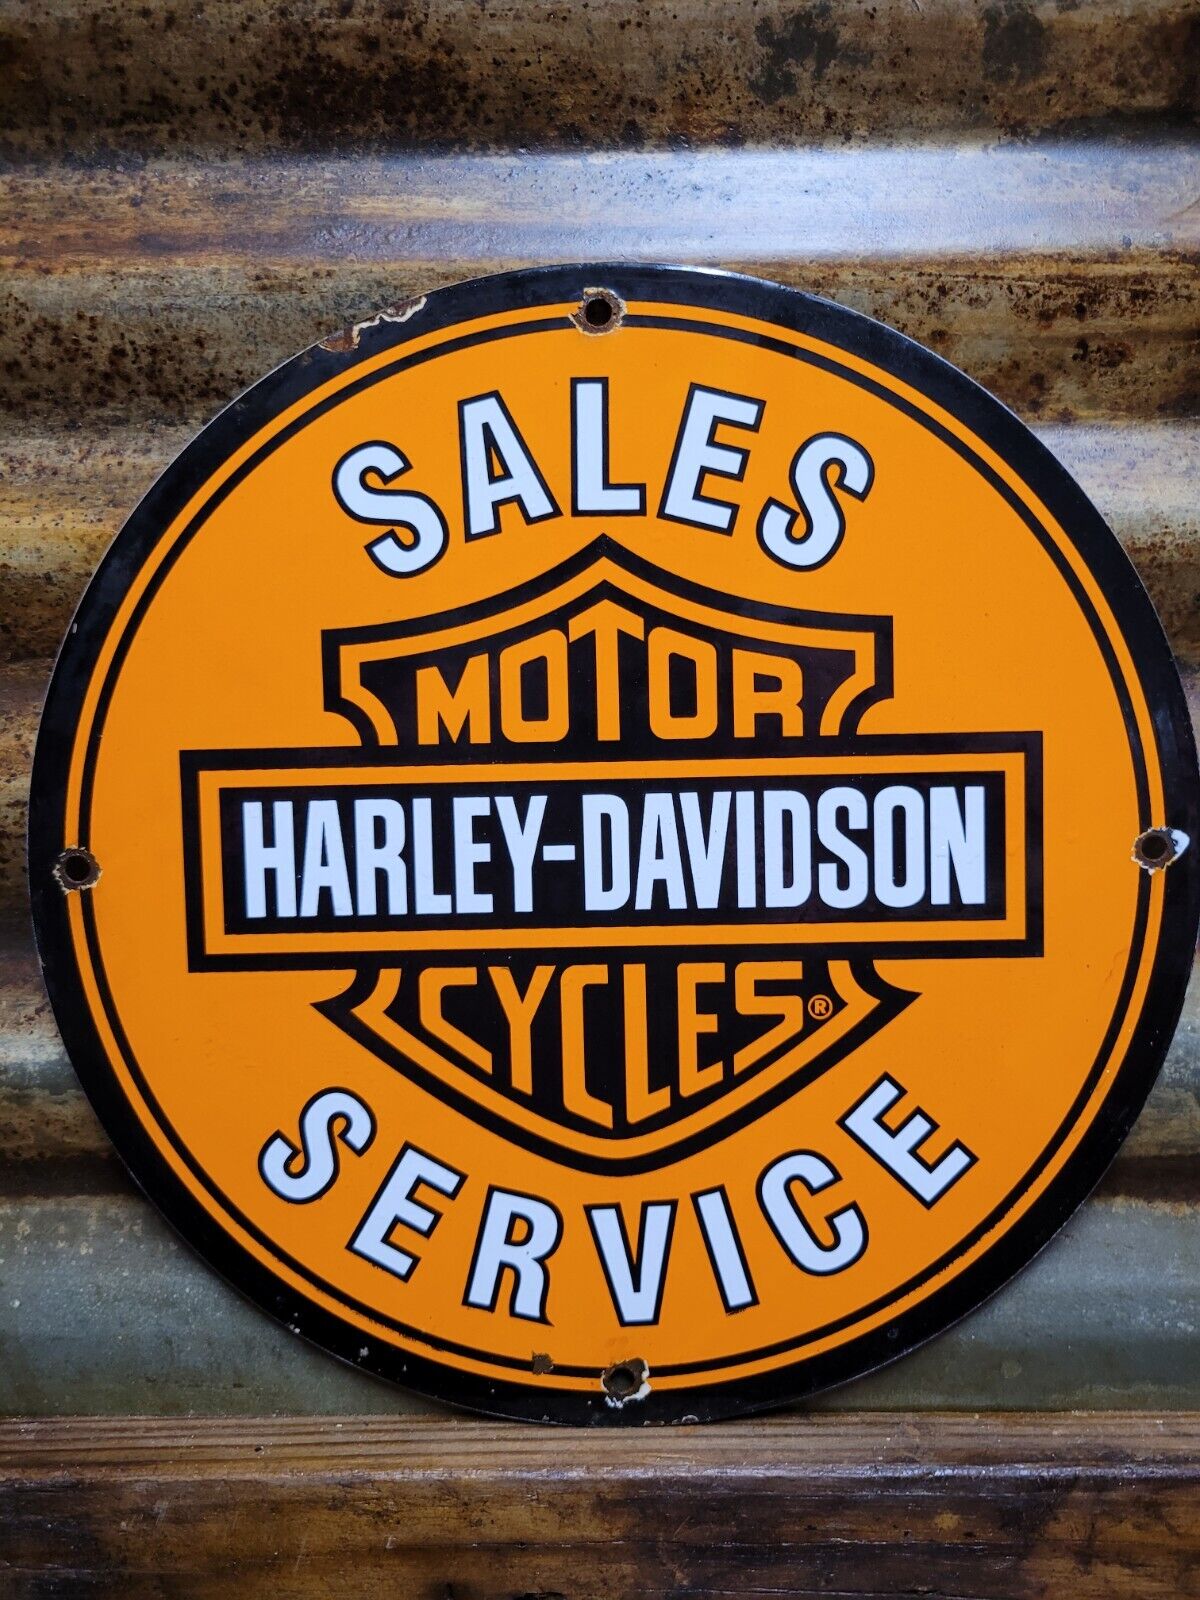 VINTAGE HARLEY DAVIDSON MOTORCYCLE PORCELAIN SIGN OLD BIKE DEALER SALES SERVICE